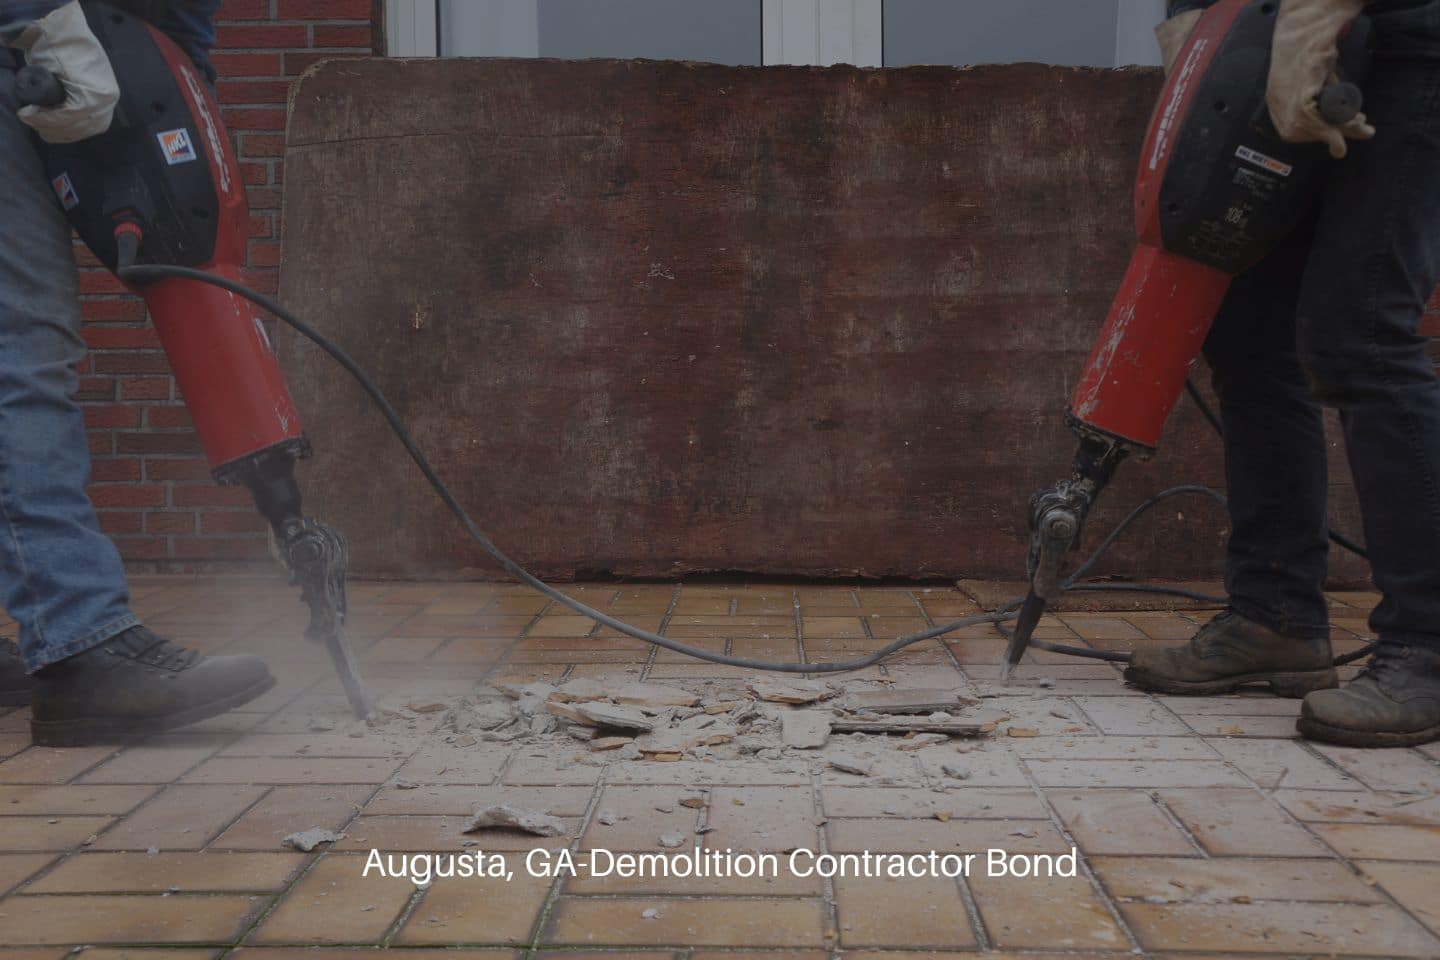 Augusta, GA-Demolition Contractor Bond - Jackhammer used by a contractor. Two demolition contractors.